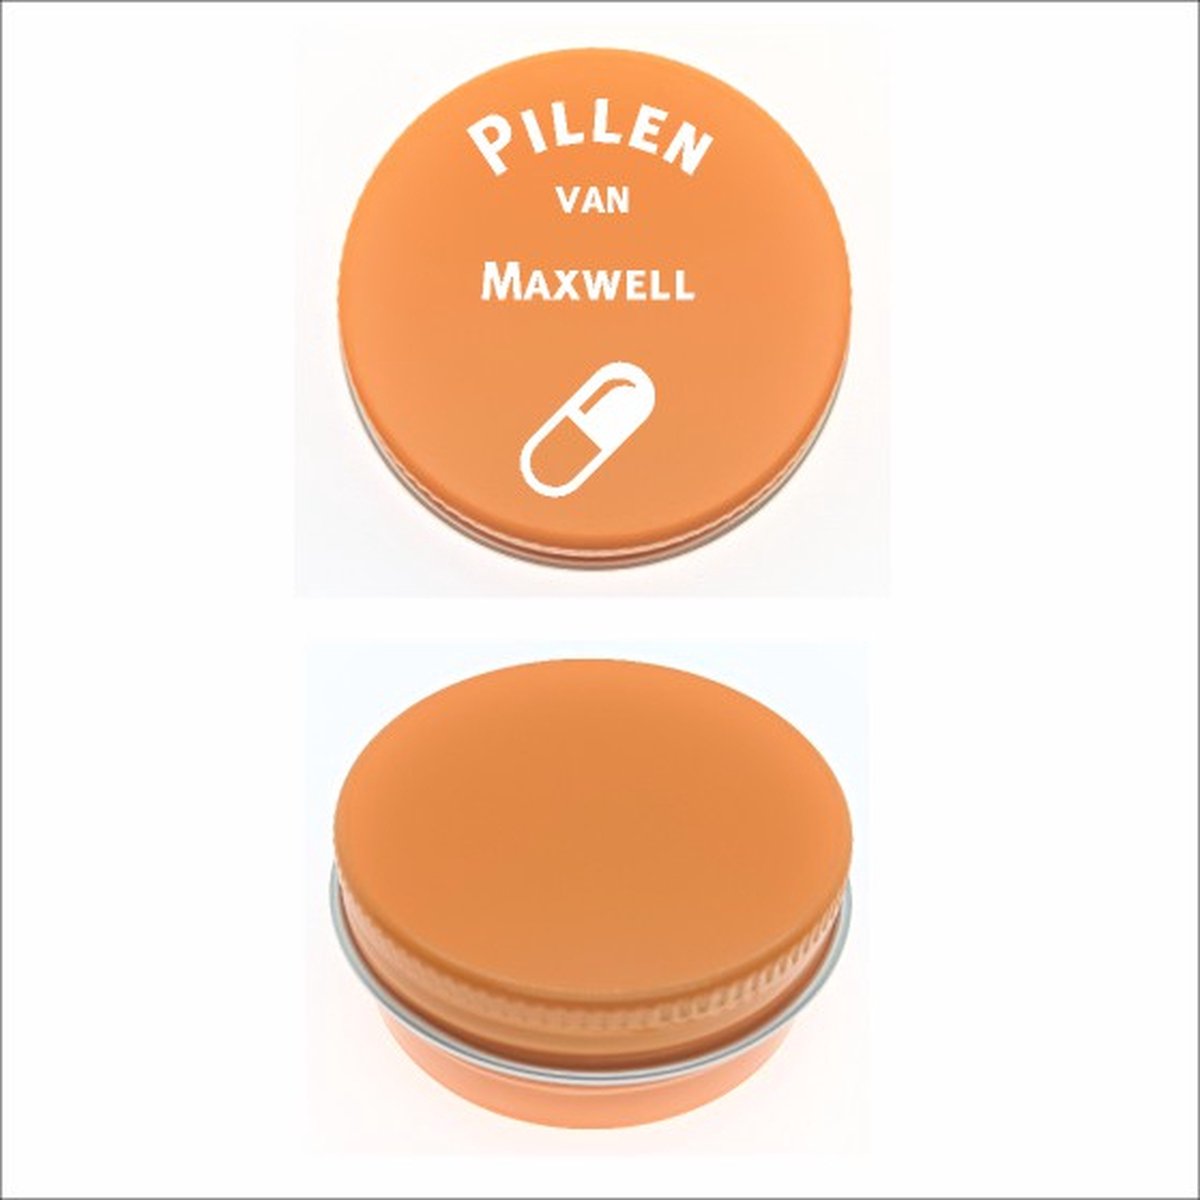 Pillen Blikje Met Naam Gravering - Maxwell